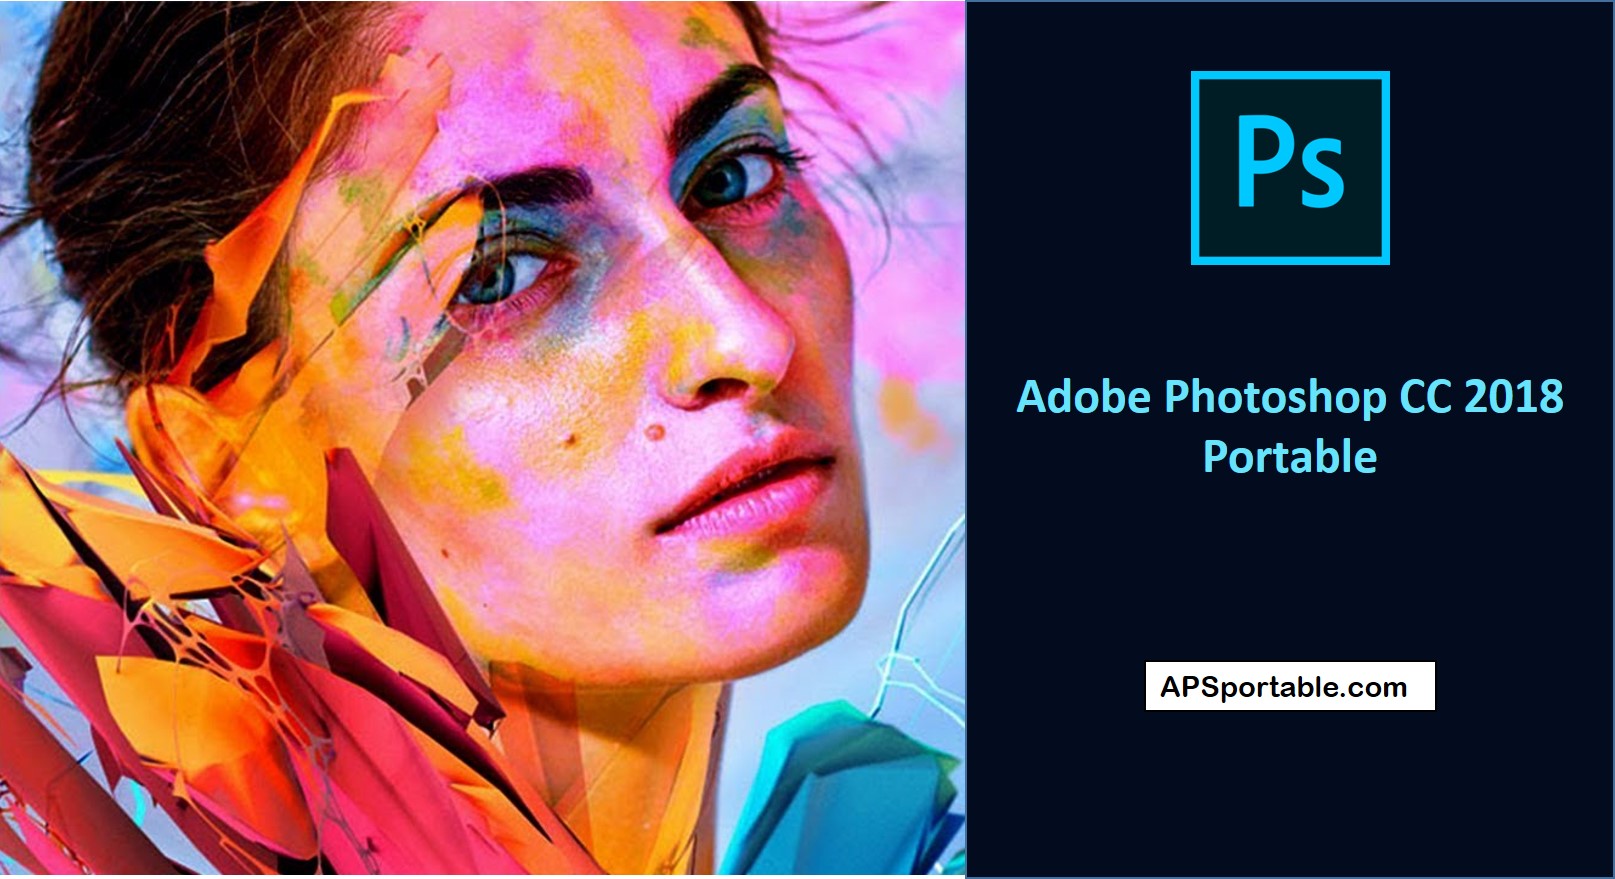 Adobe Photoshop CC 2018 Portable 32/64 bit download - Portable Appz